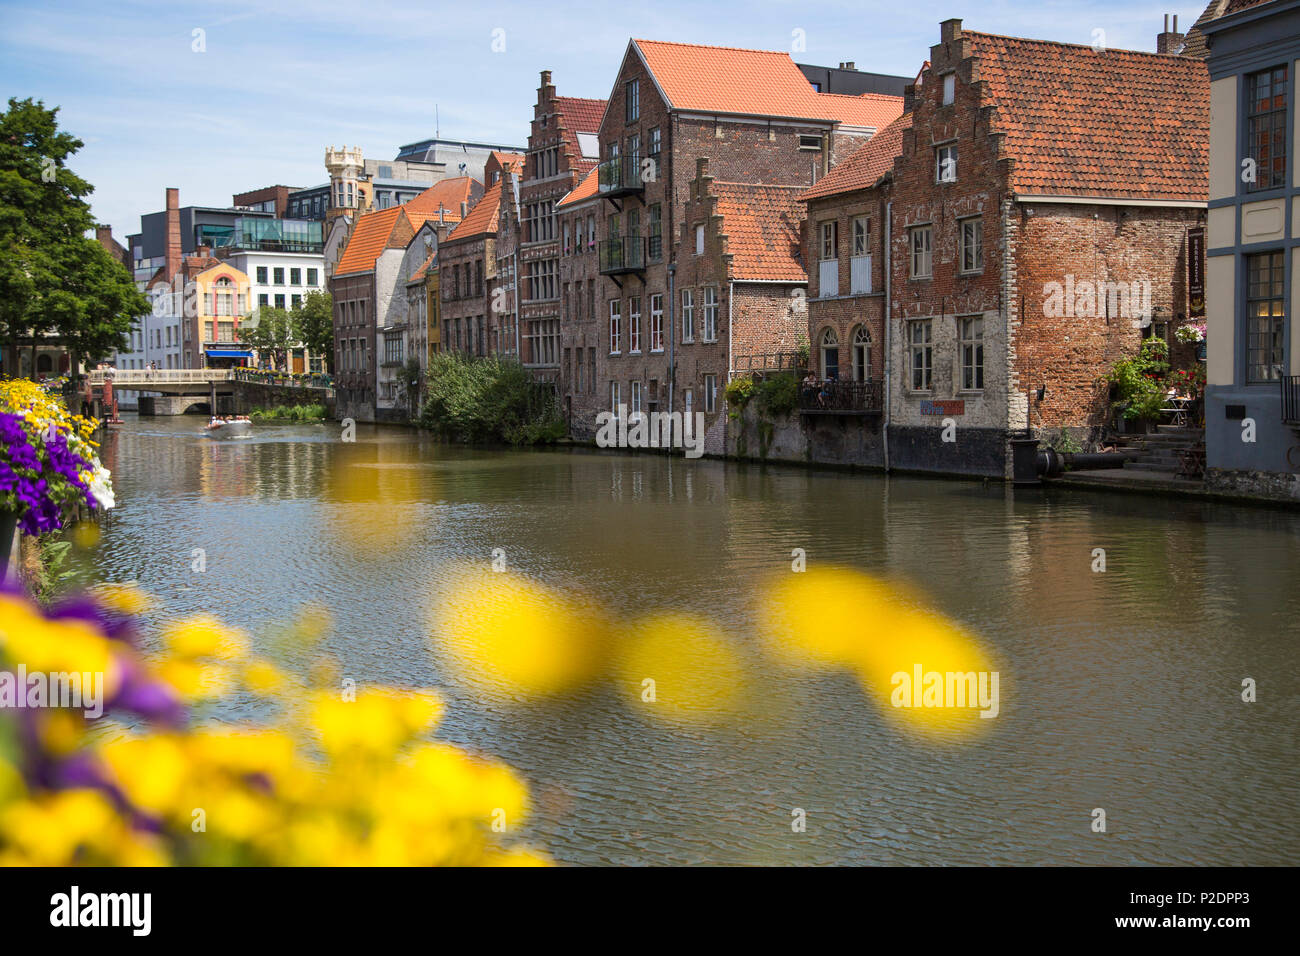 Bateau-mouche sur le canal vu à travers les fleurs, Gand, Région flamande, Belgique Banque D'Images